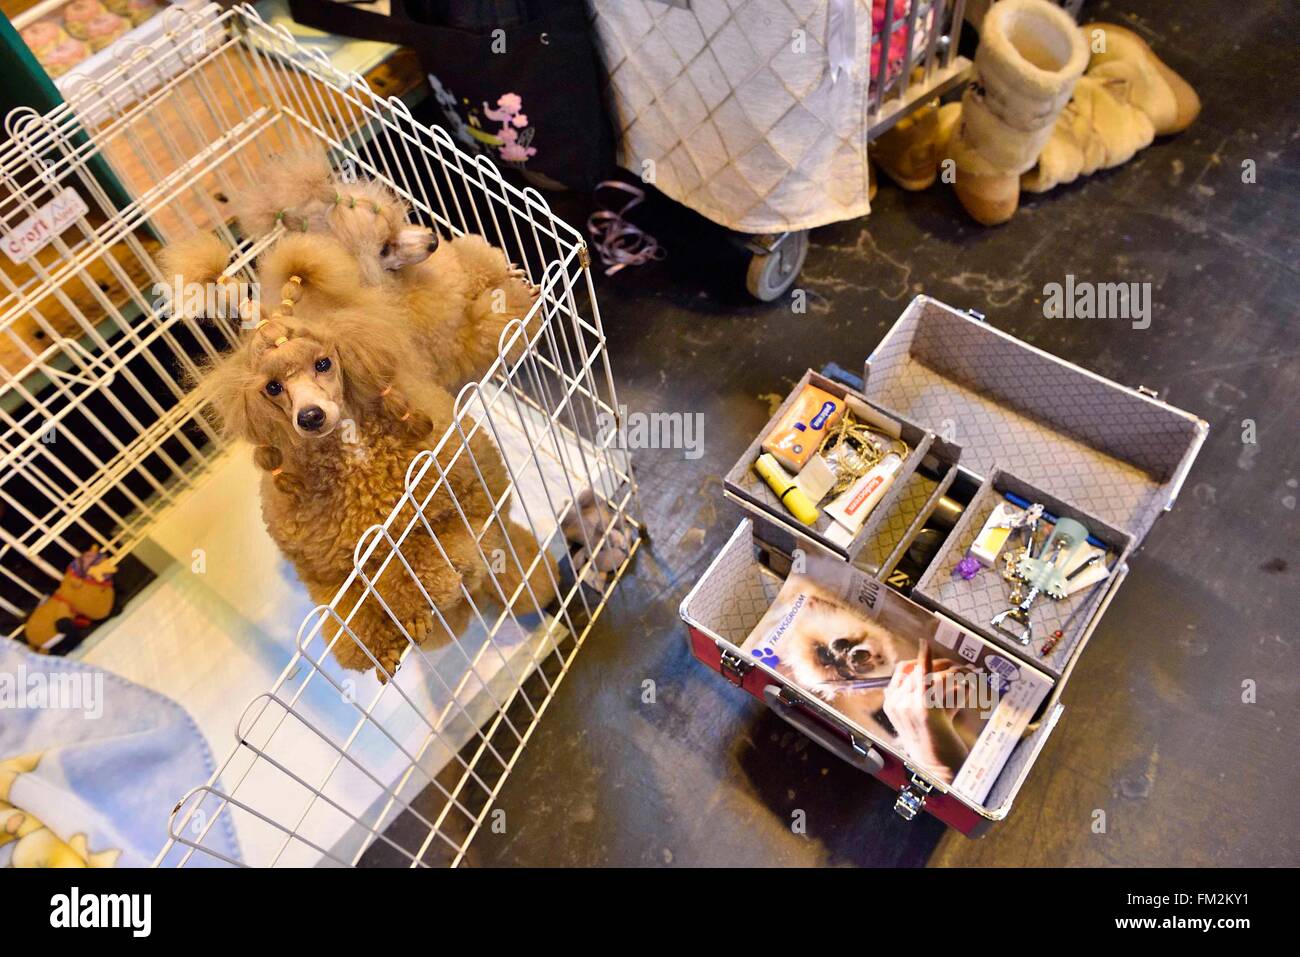 Birmingham, Gran Bretagna. Decimo Mar, 2016. Due gatti giocattolo sono visibili nelle loro gabbie al Crufts dog show a Birmingham, Inghilterra, 10 marzo 2016. L'annuale evento di quattro giorni, aperto giovedì, è uno dei più grandi del mondo. Credito: Ray codolo/Xinhua/Alamy Live News Foto Stock